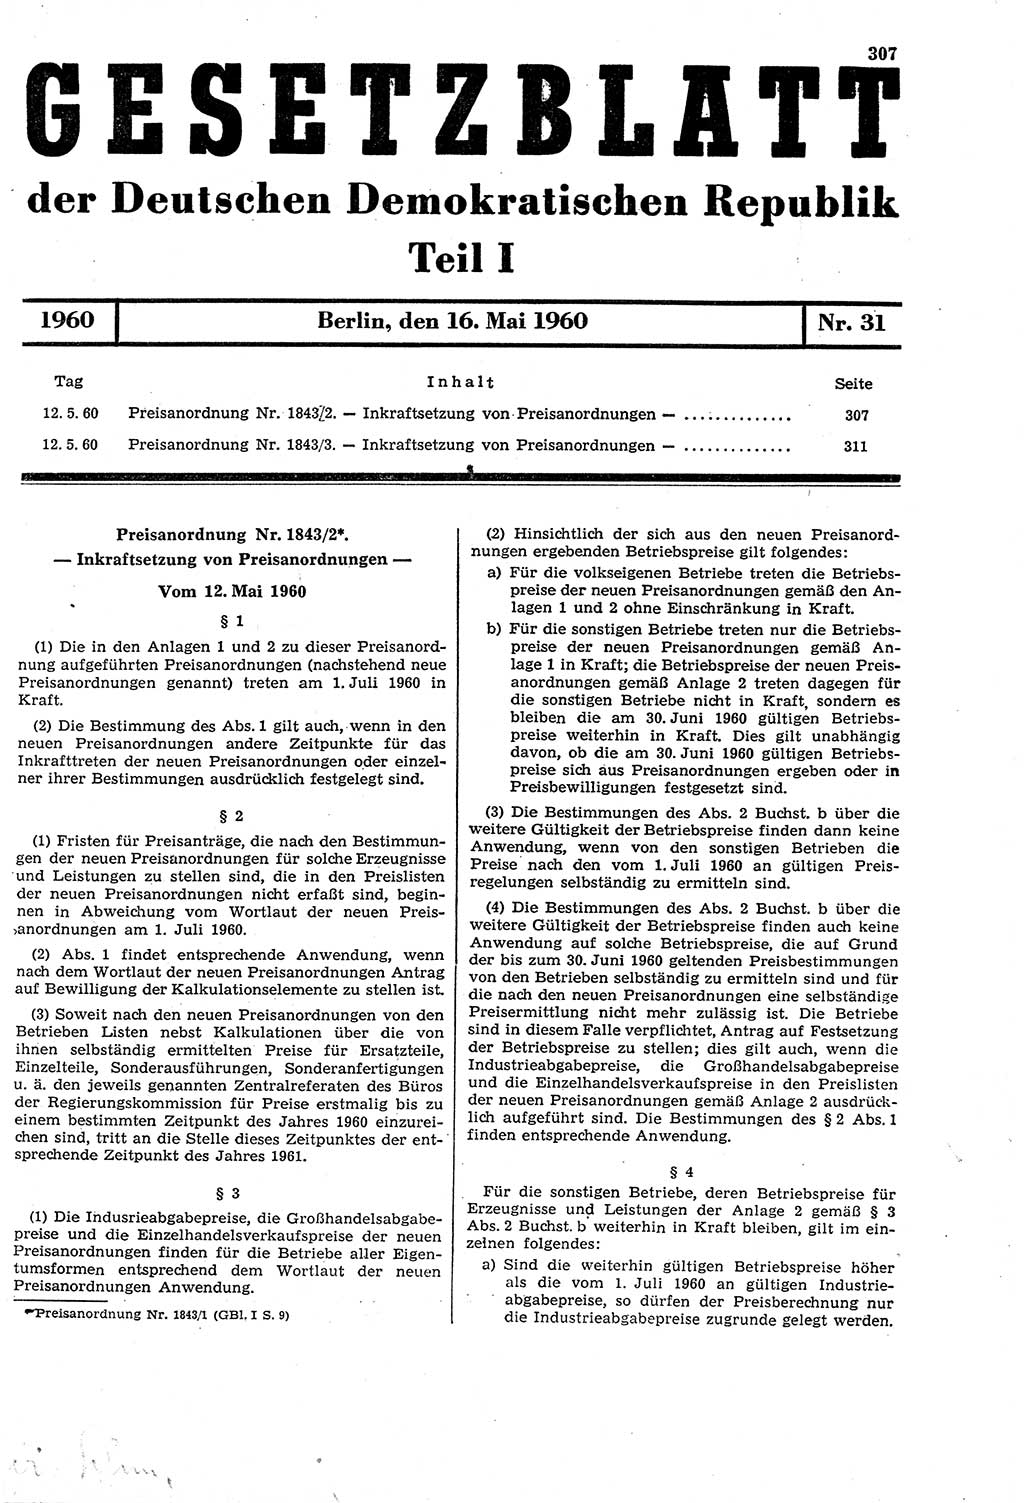 Gesetzblatt (GBl.) der Deutschen Demokratischen Republik (DDR) Teil Ⅰ 1960, Seite 307 (GBl. DDR Ⅰ 1960, S. 307)